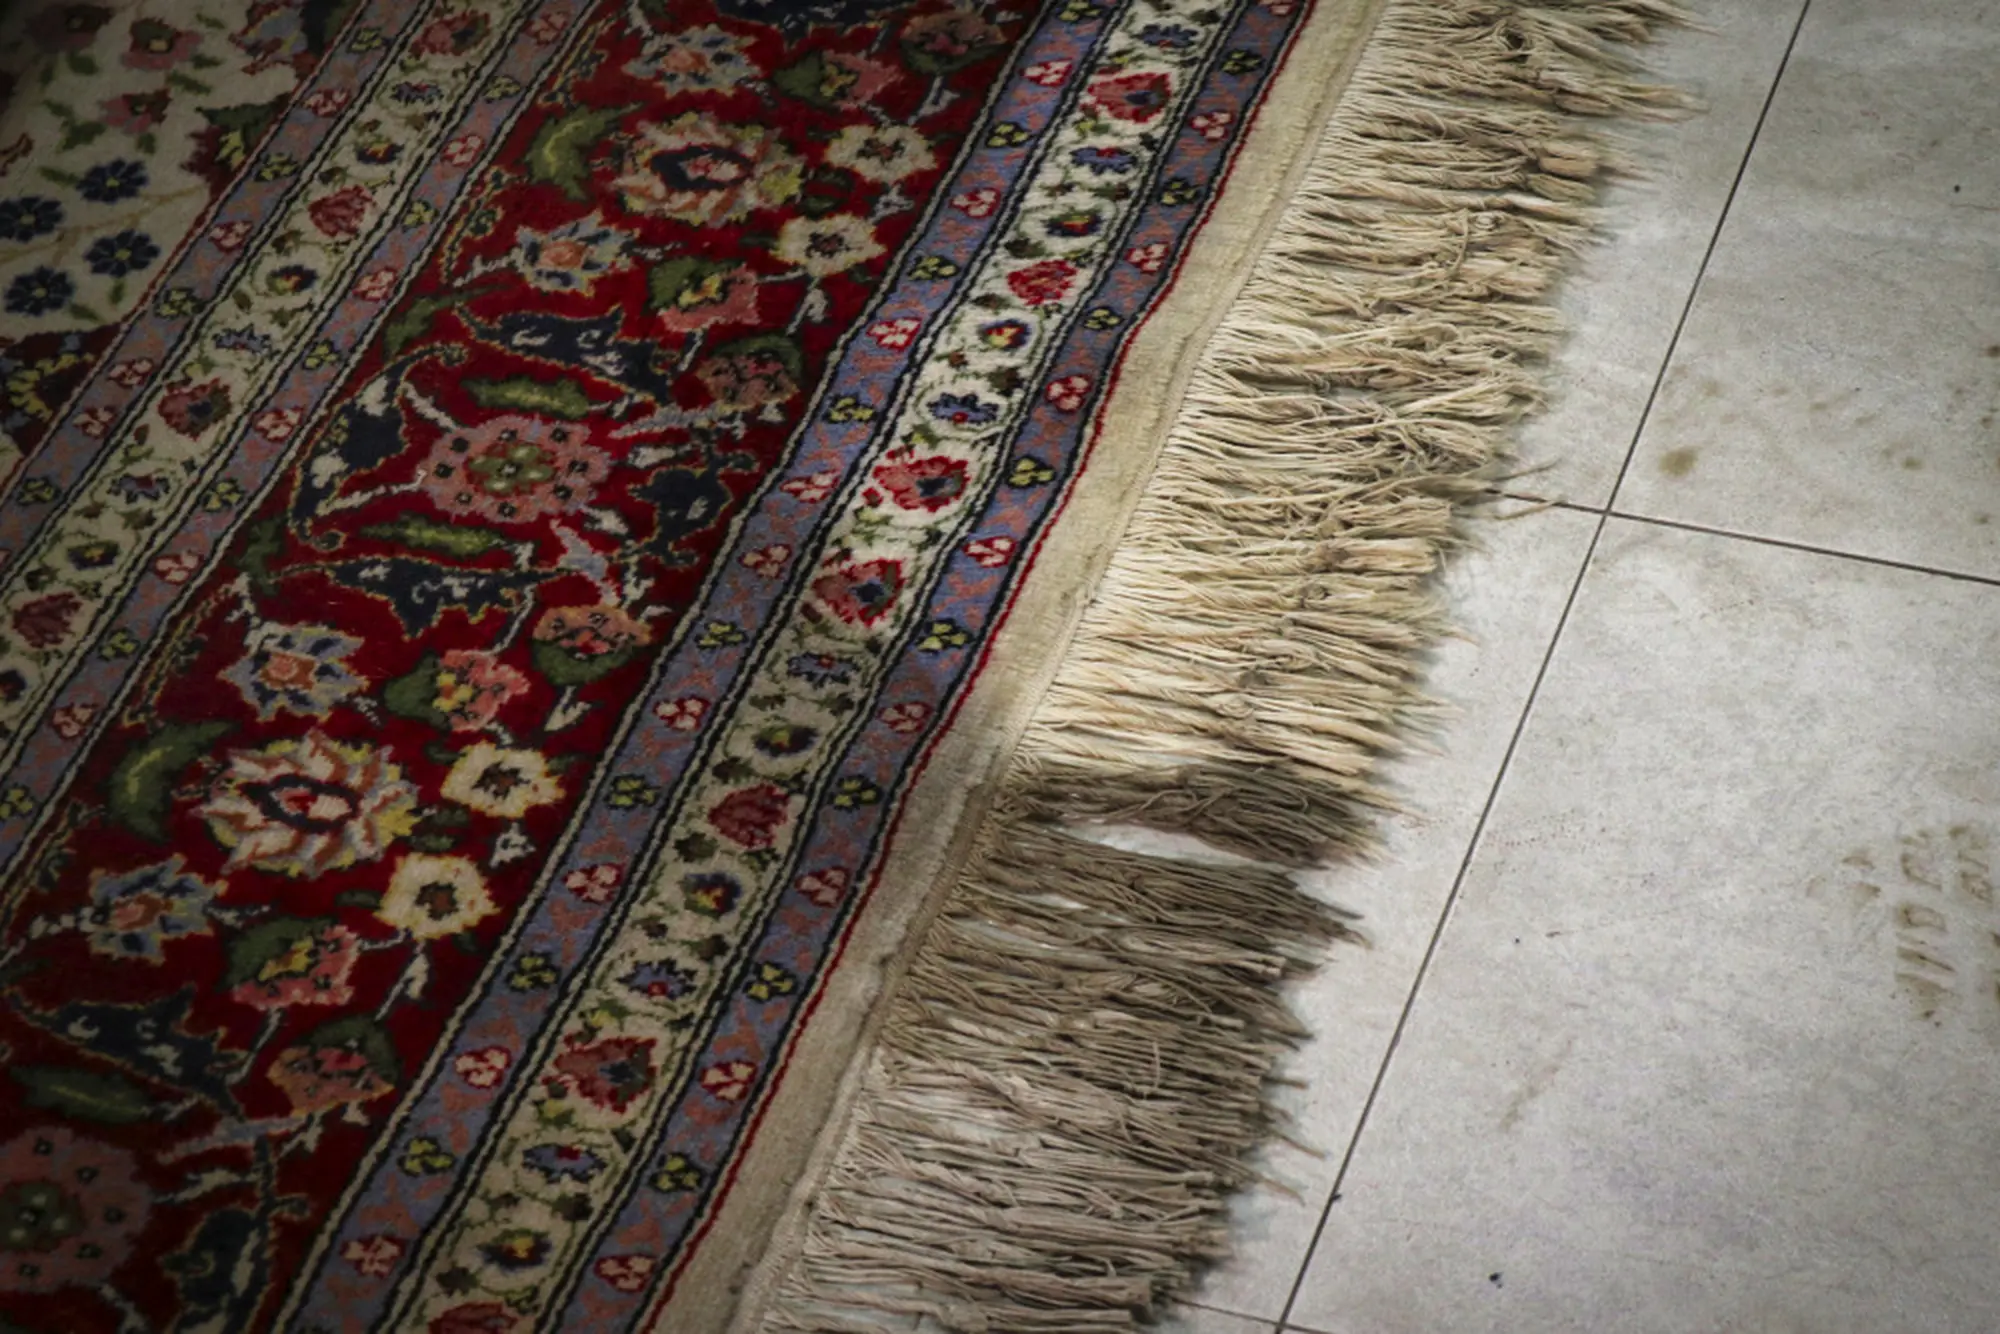 Lavaggio manuale ad acqua di tappeti antichi e moderni